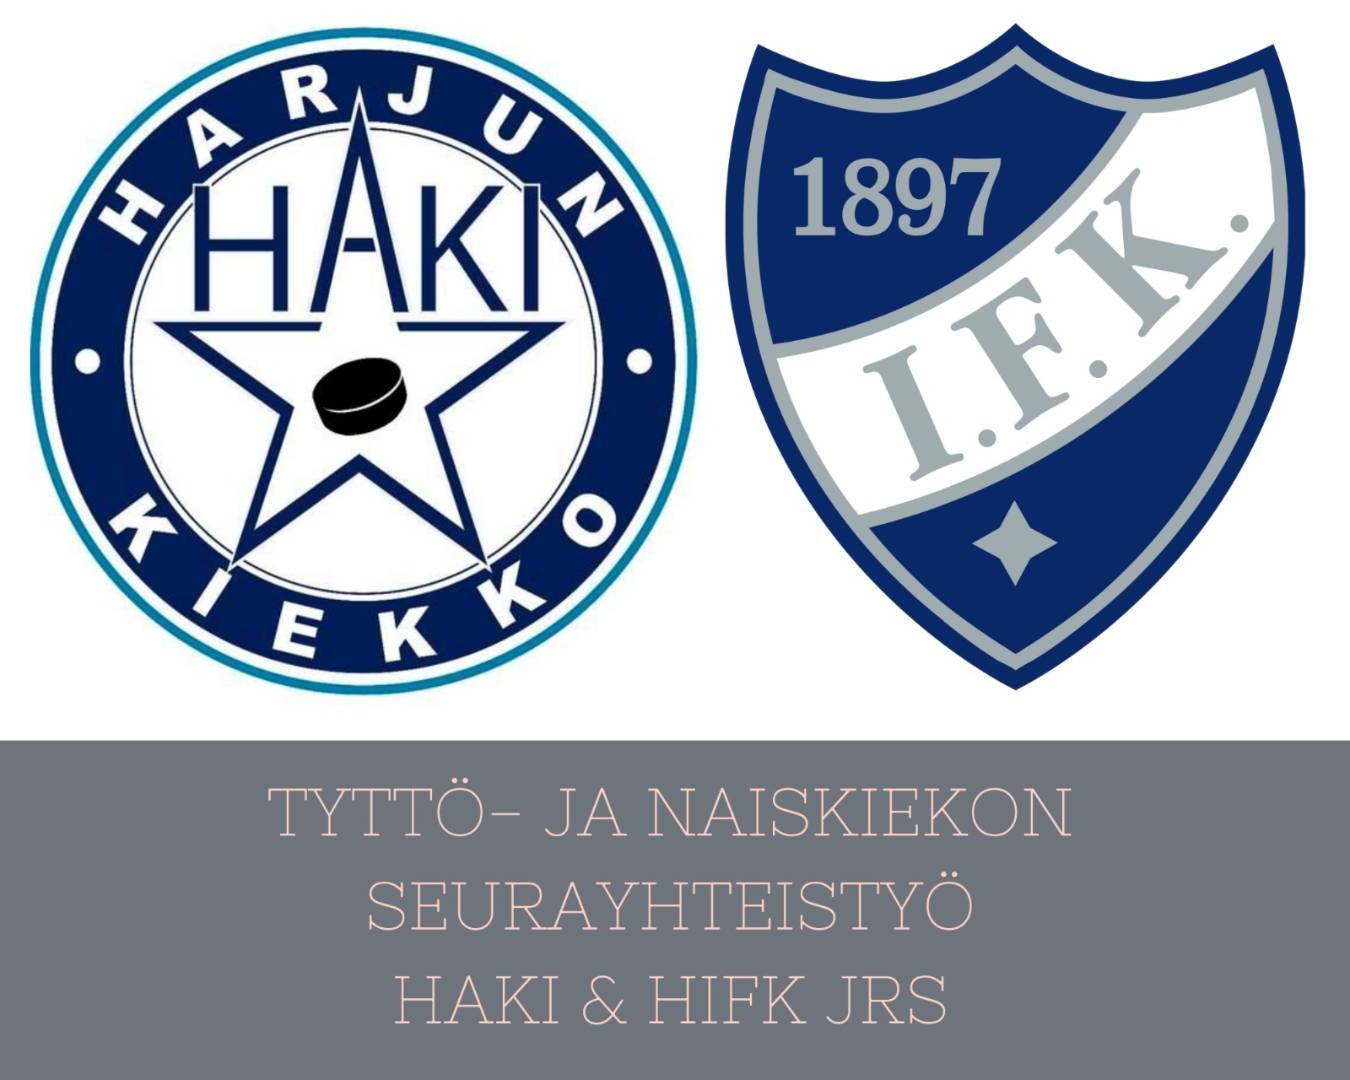 TIEDOTE - Helsingin IFK ja Harjun Kiekko yhteistyöhön tyttö- ja naiskiekossa